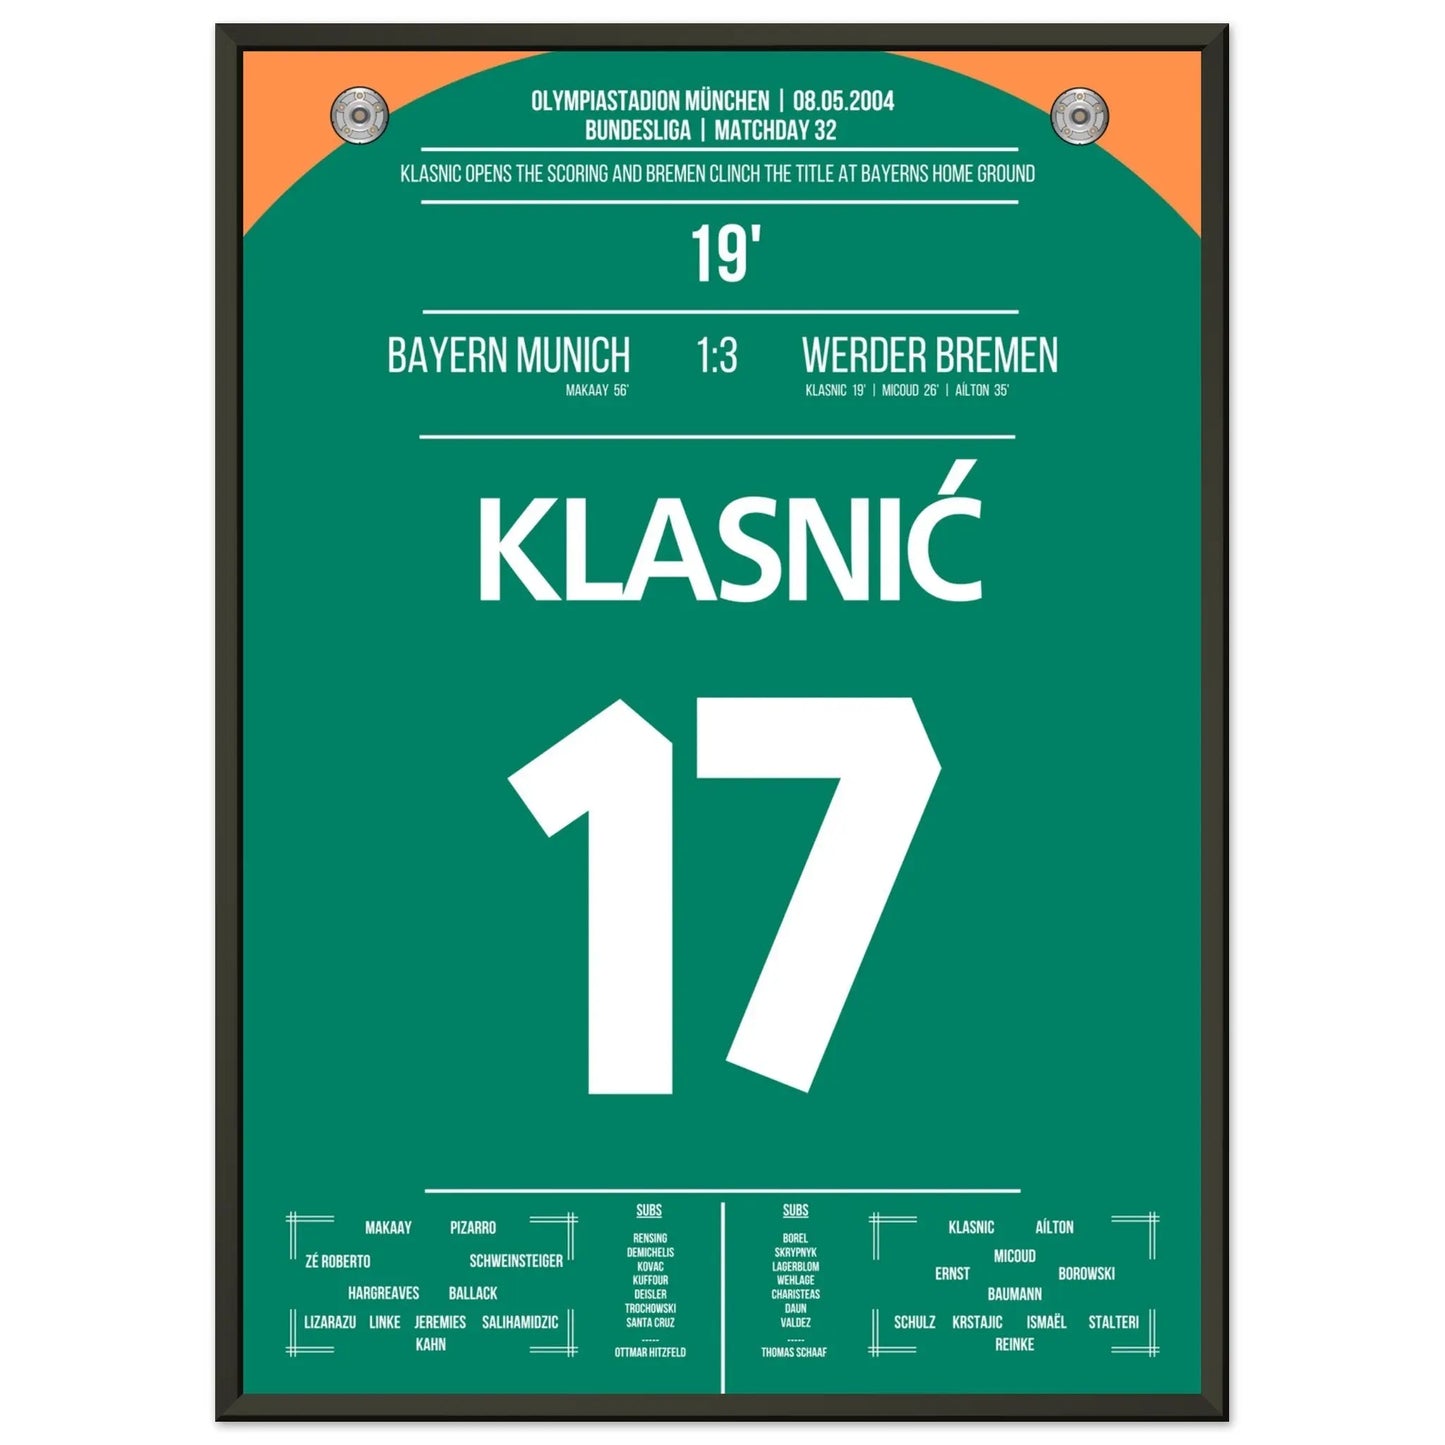 Le but de Klasnic en remportant le championnat à Munich en 2004